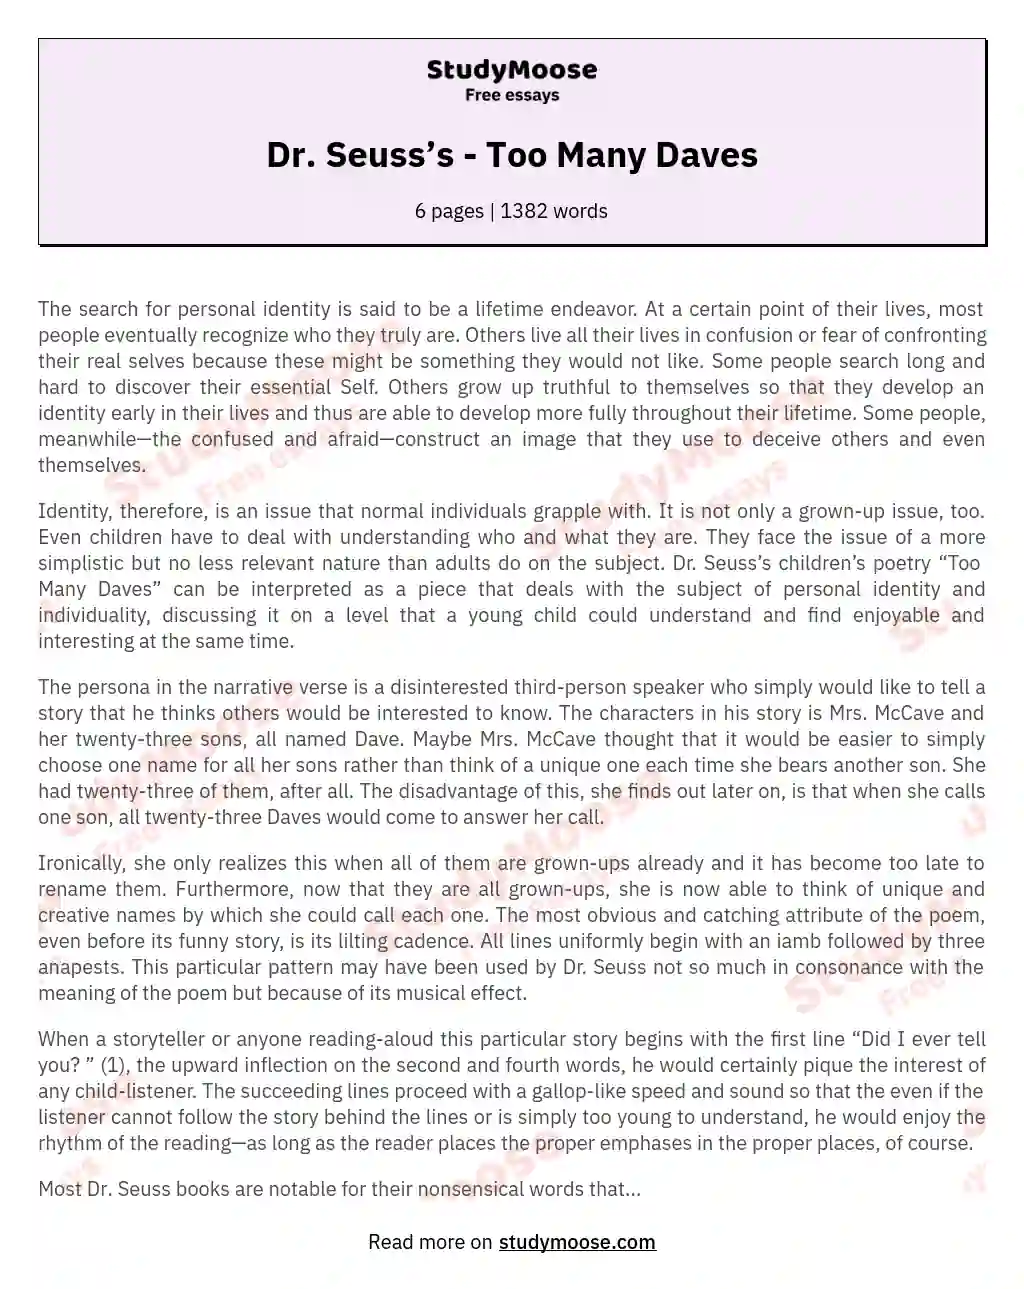 Dr. Seuss’s  - Too Many Daves essay